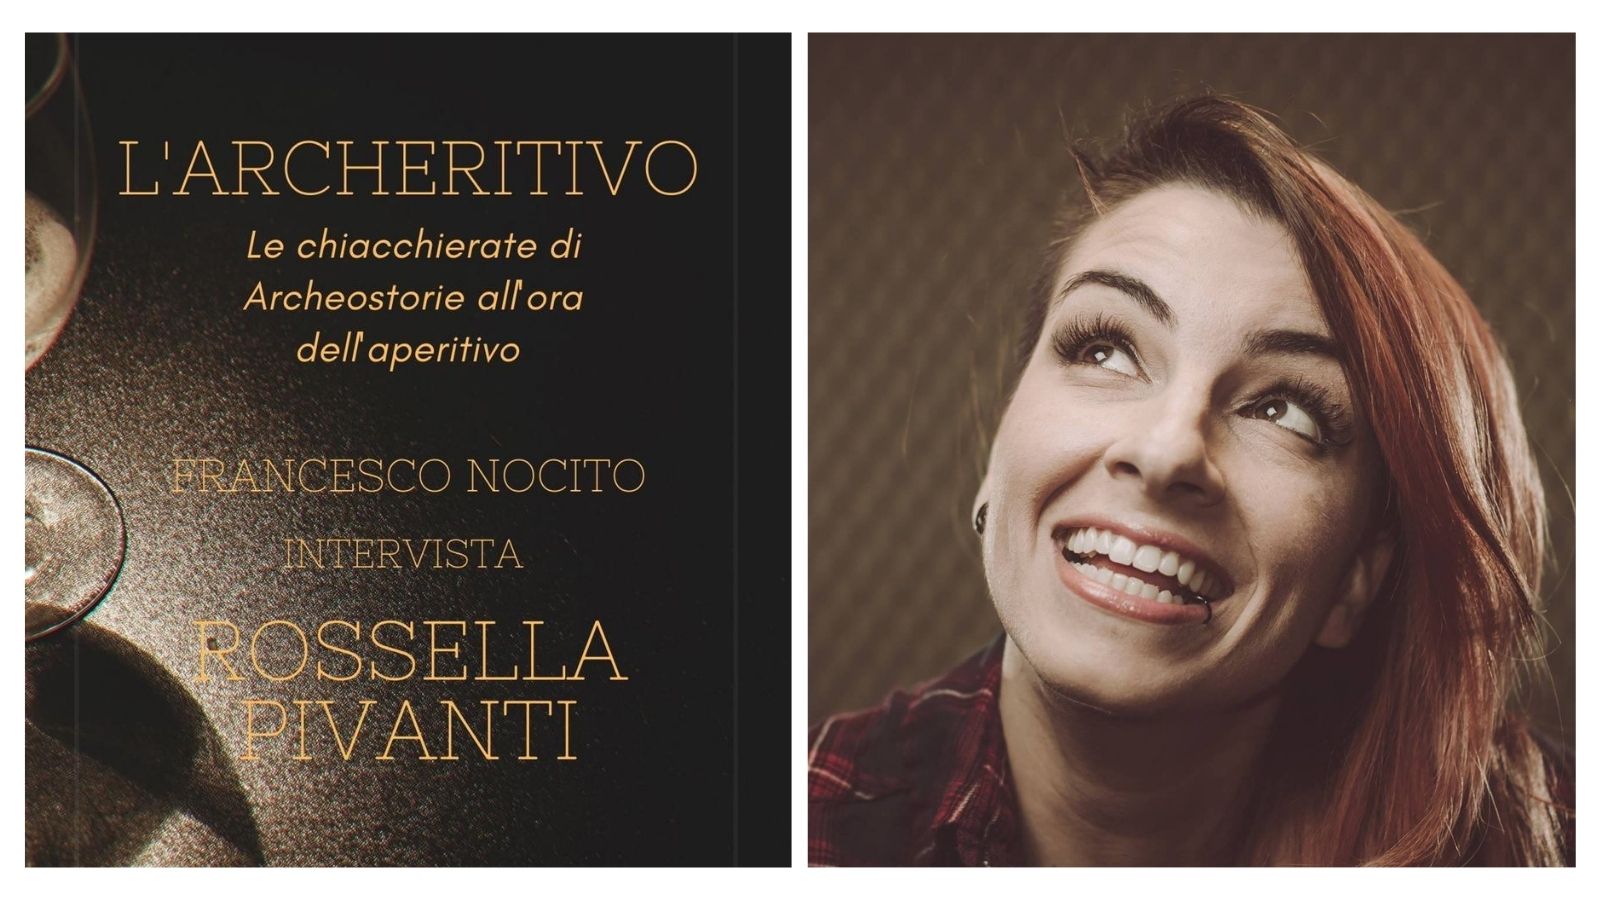 Rossella Pivanti, archeritivo